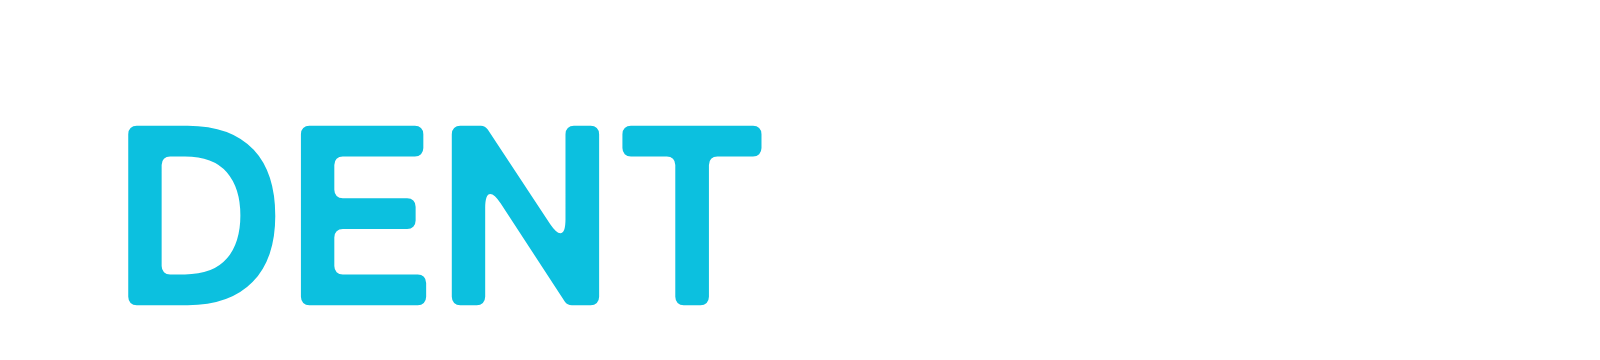 岡山県のデントリペアショップ DENT ZERO | デント ゼロ(岡本自動車)